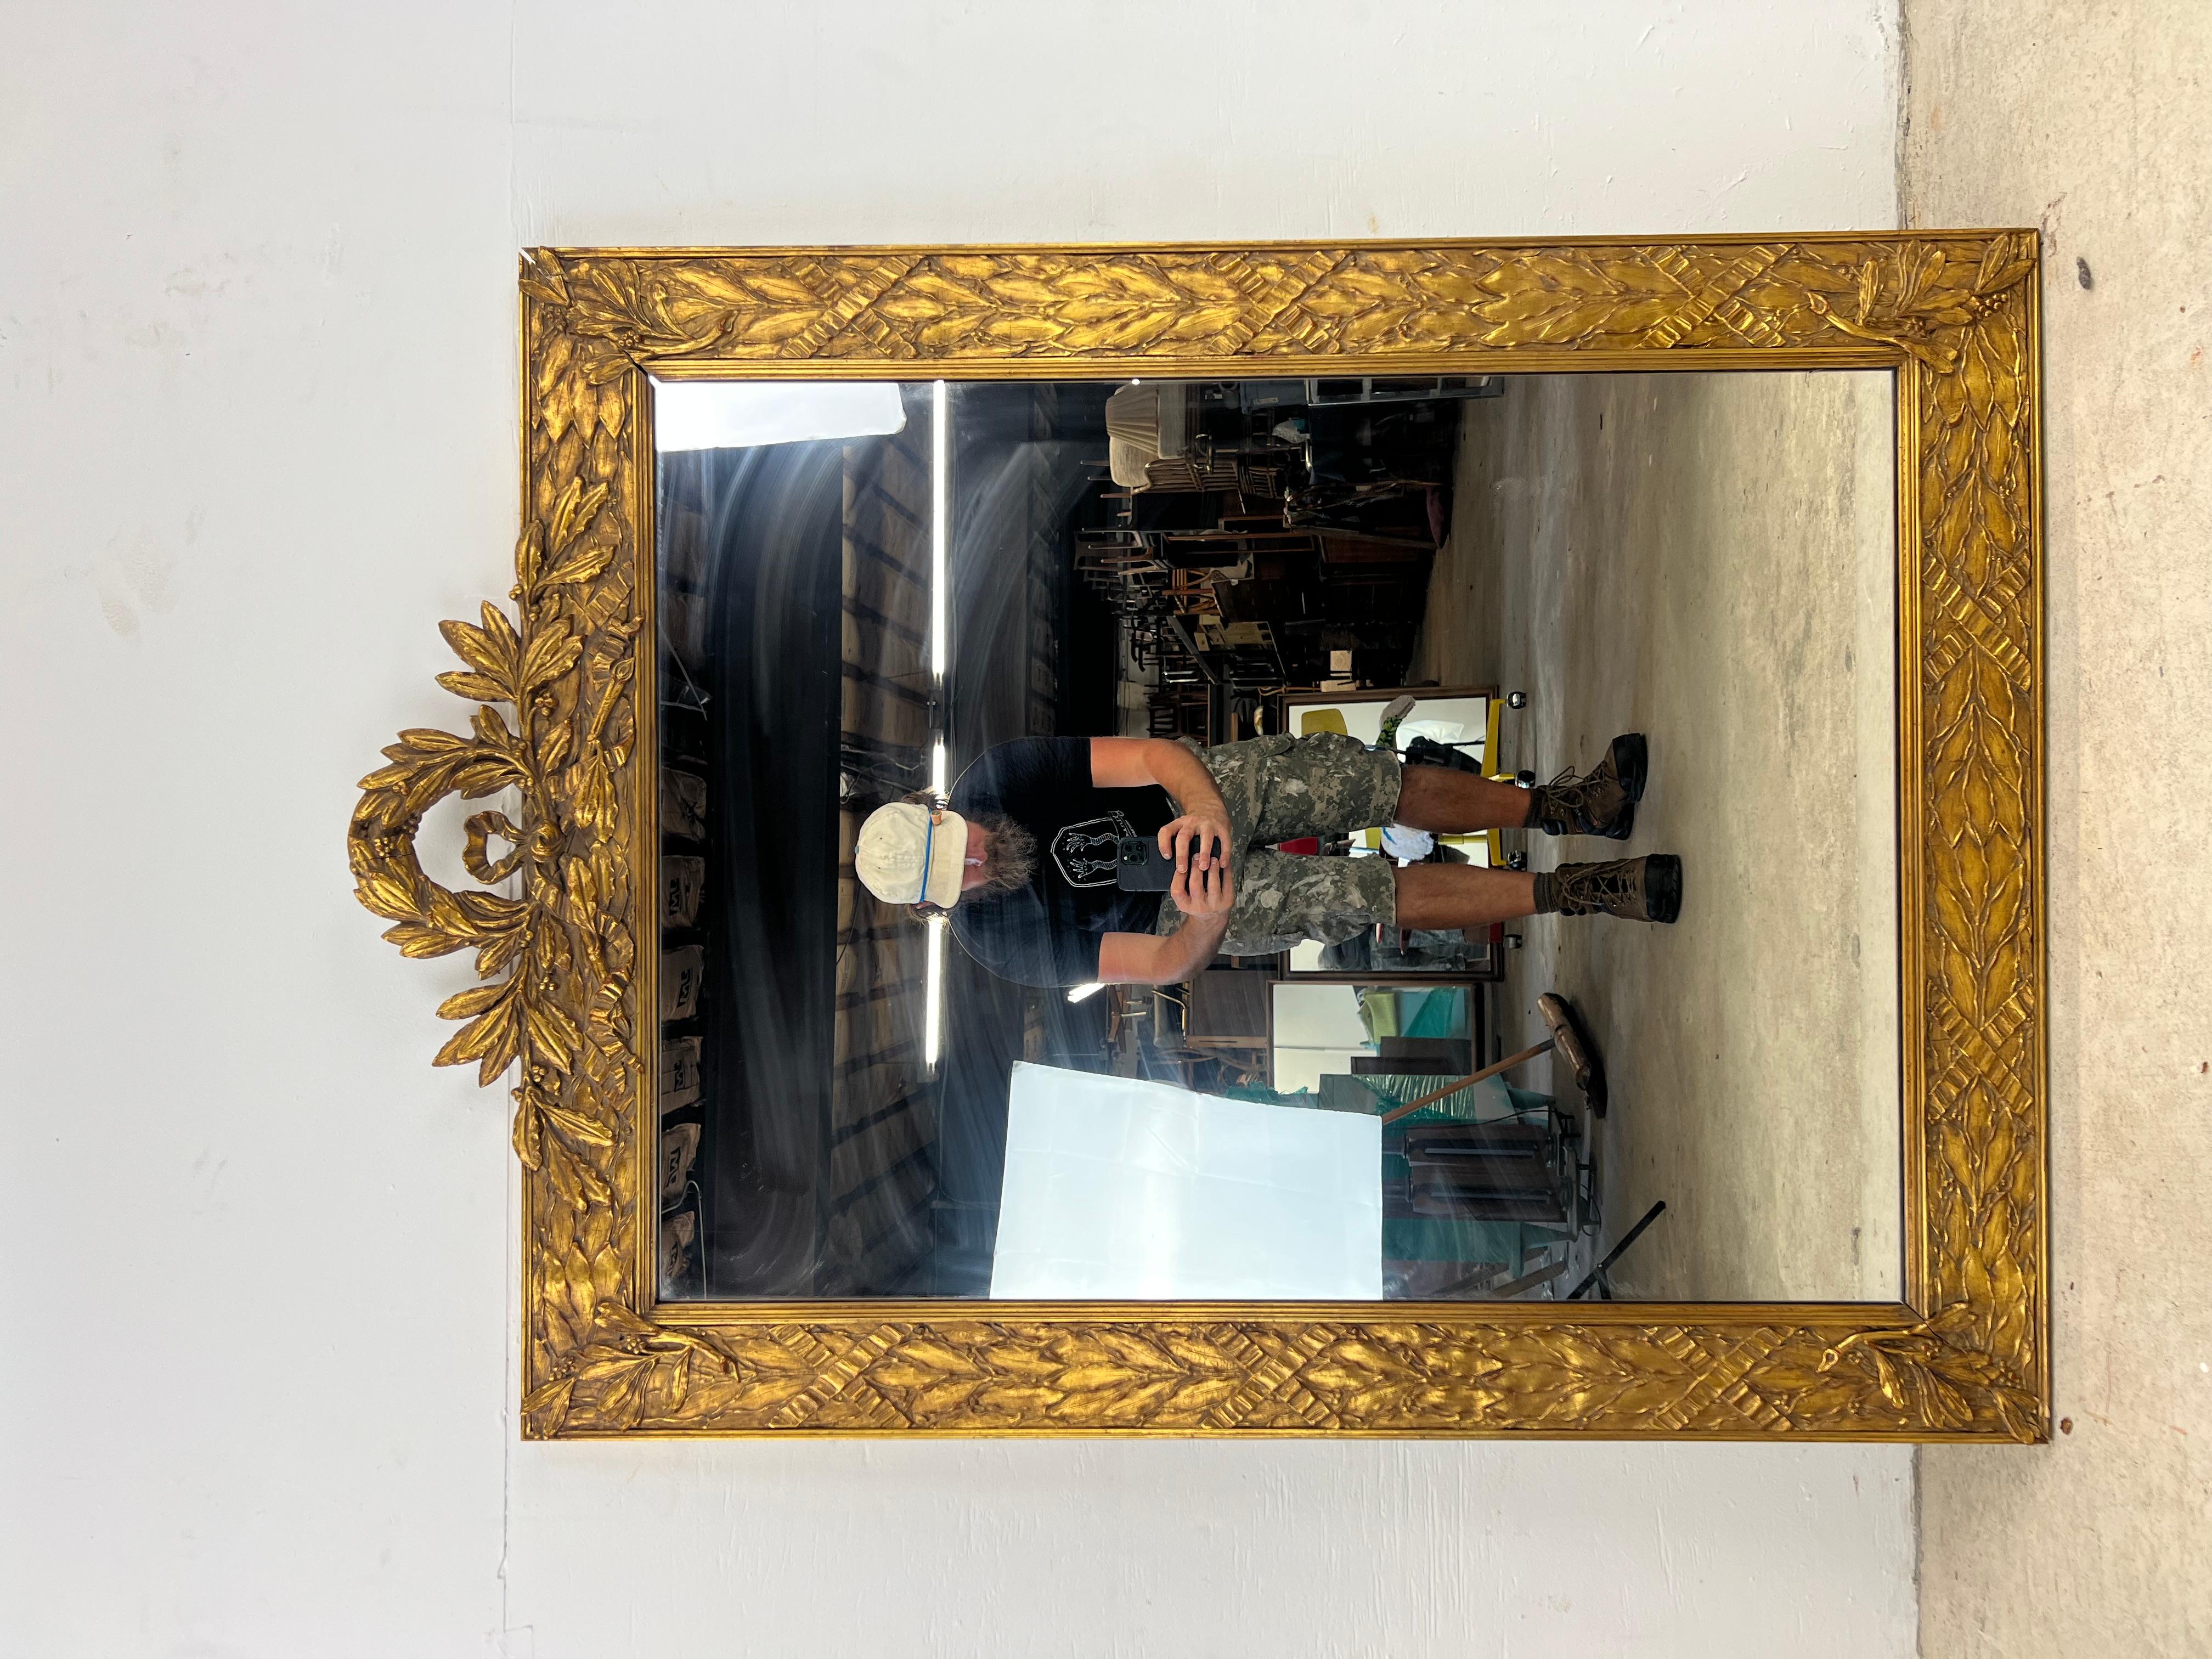 Ce miroir mural moderne du milieu du siècle de Drexel présente un cadre en bois dur avec des détails sculptés uniques, un verre miroir vintage et une corde à piano pour le suspendre.

La commode basse et la commode haute assorties sont disponibles